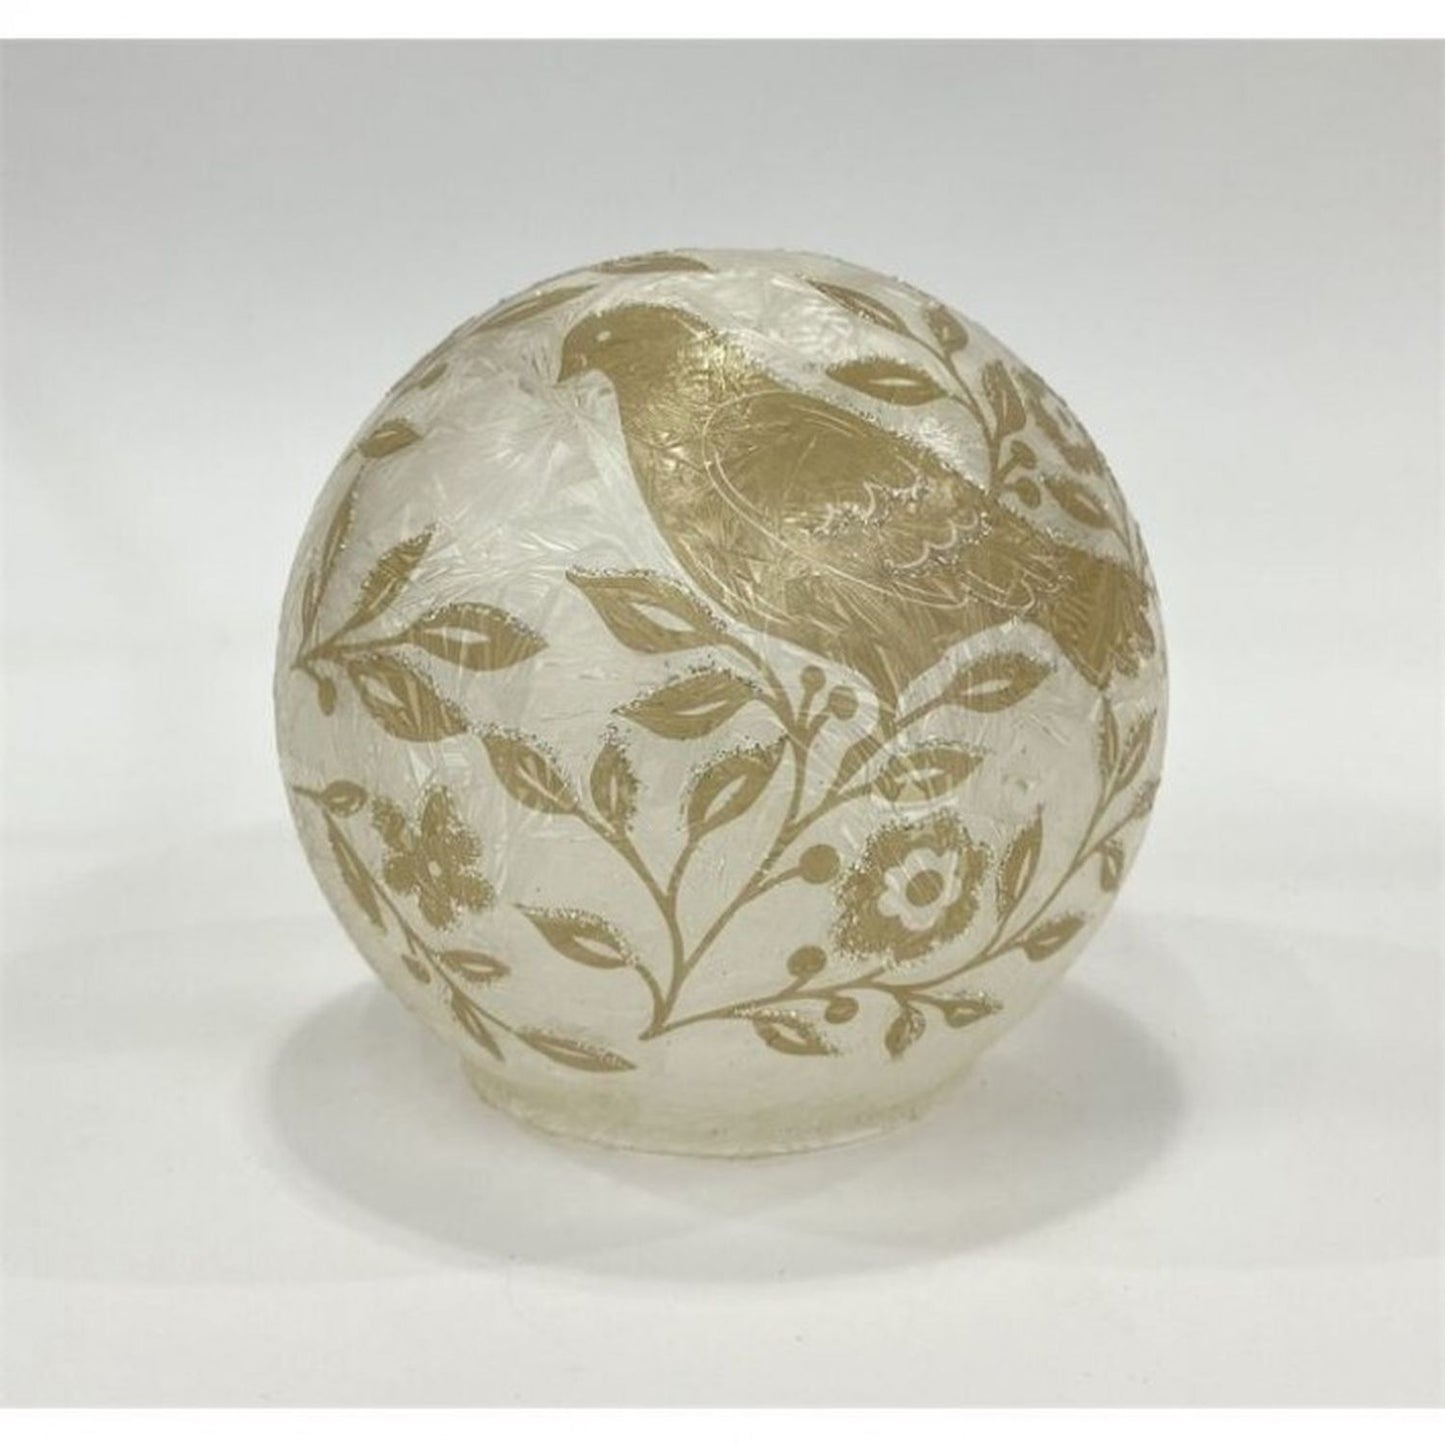 Regency International Glass Led/Bty Tmr Gilded Age Dove Ball